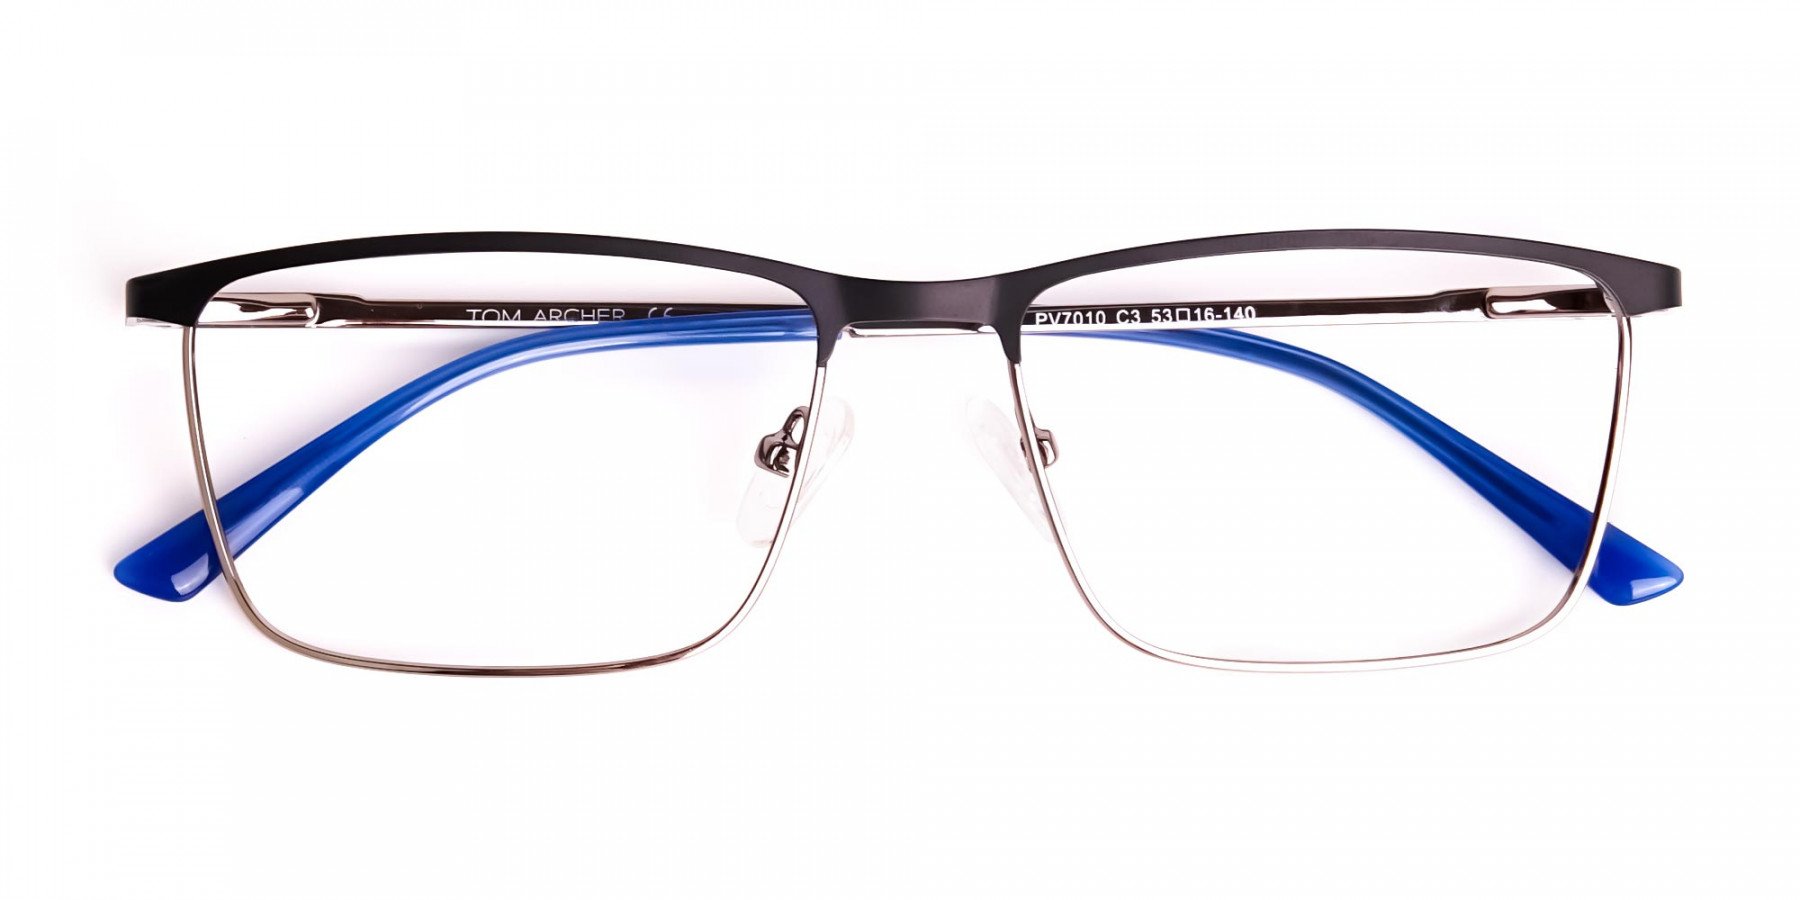 black-and-blue-gunmetal-rectangular-full-rim-glasses-frames-1